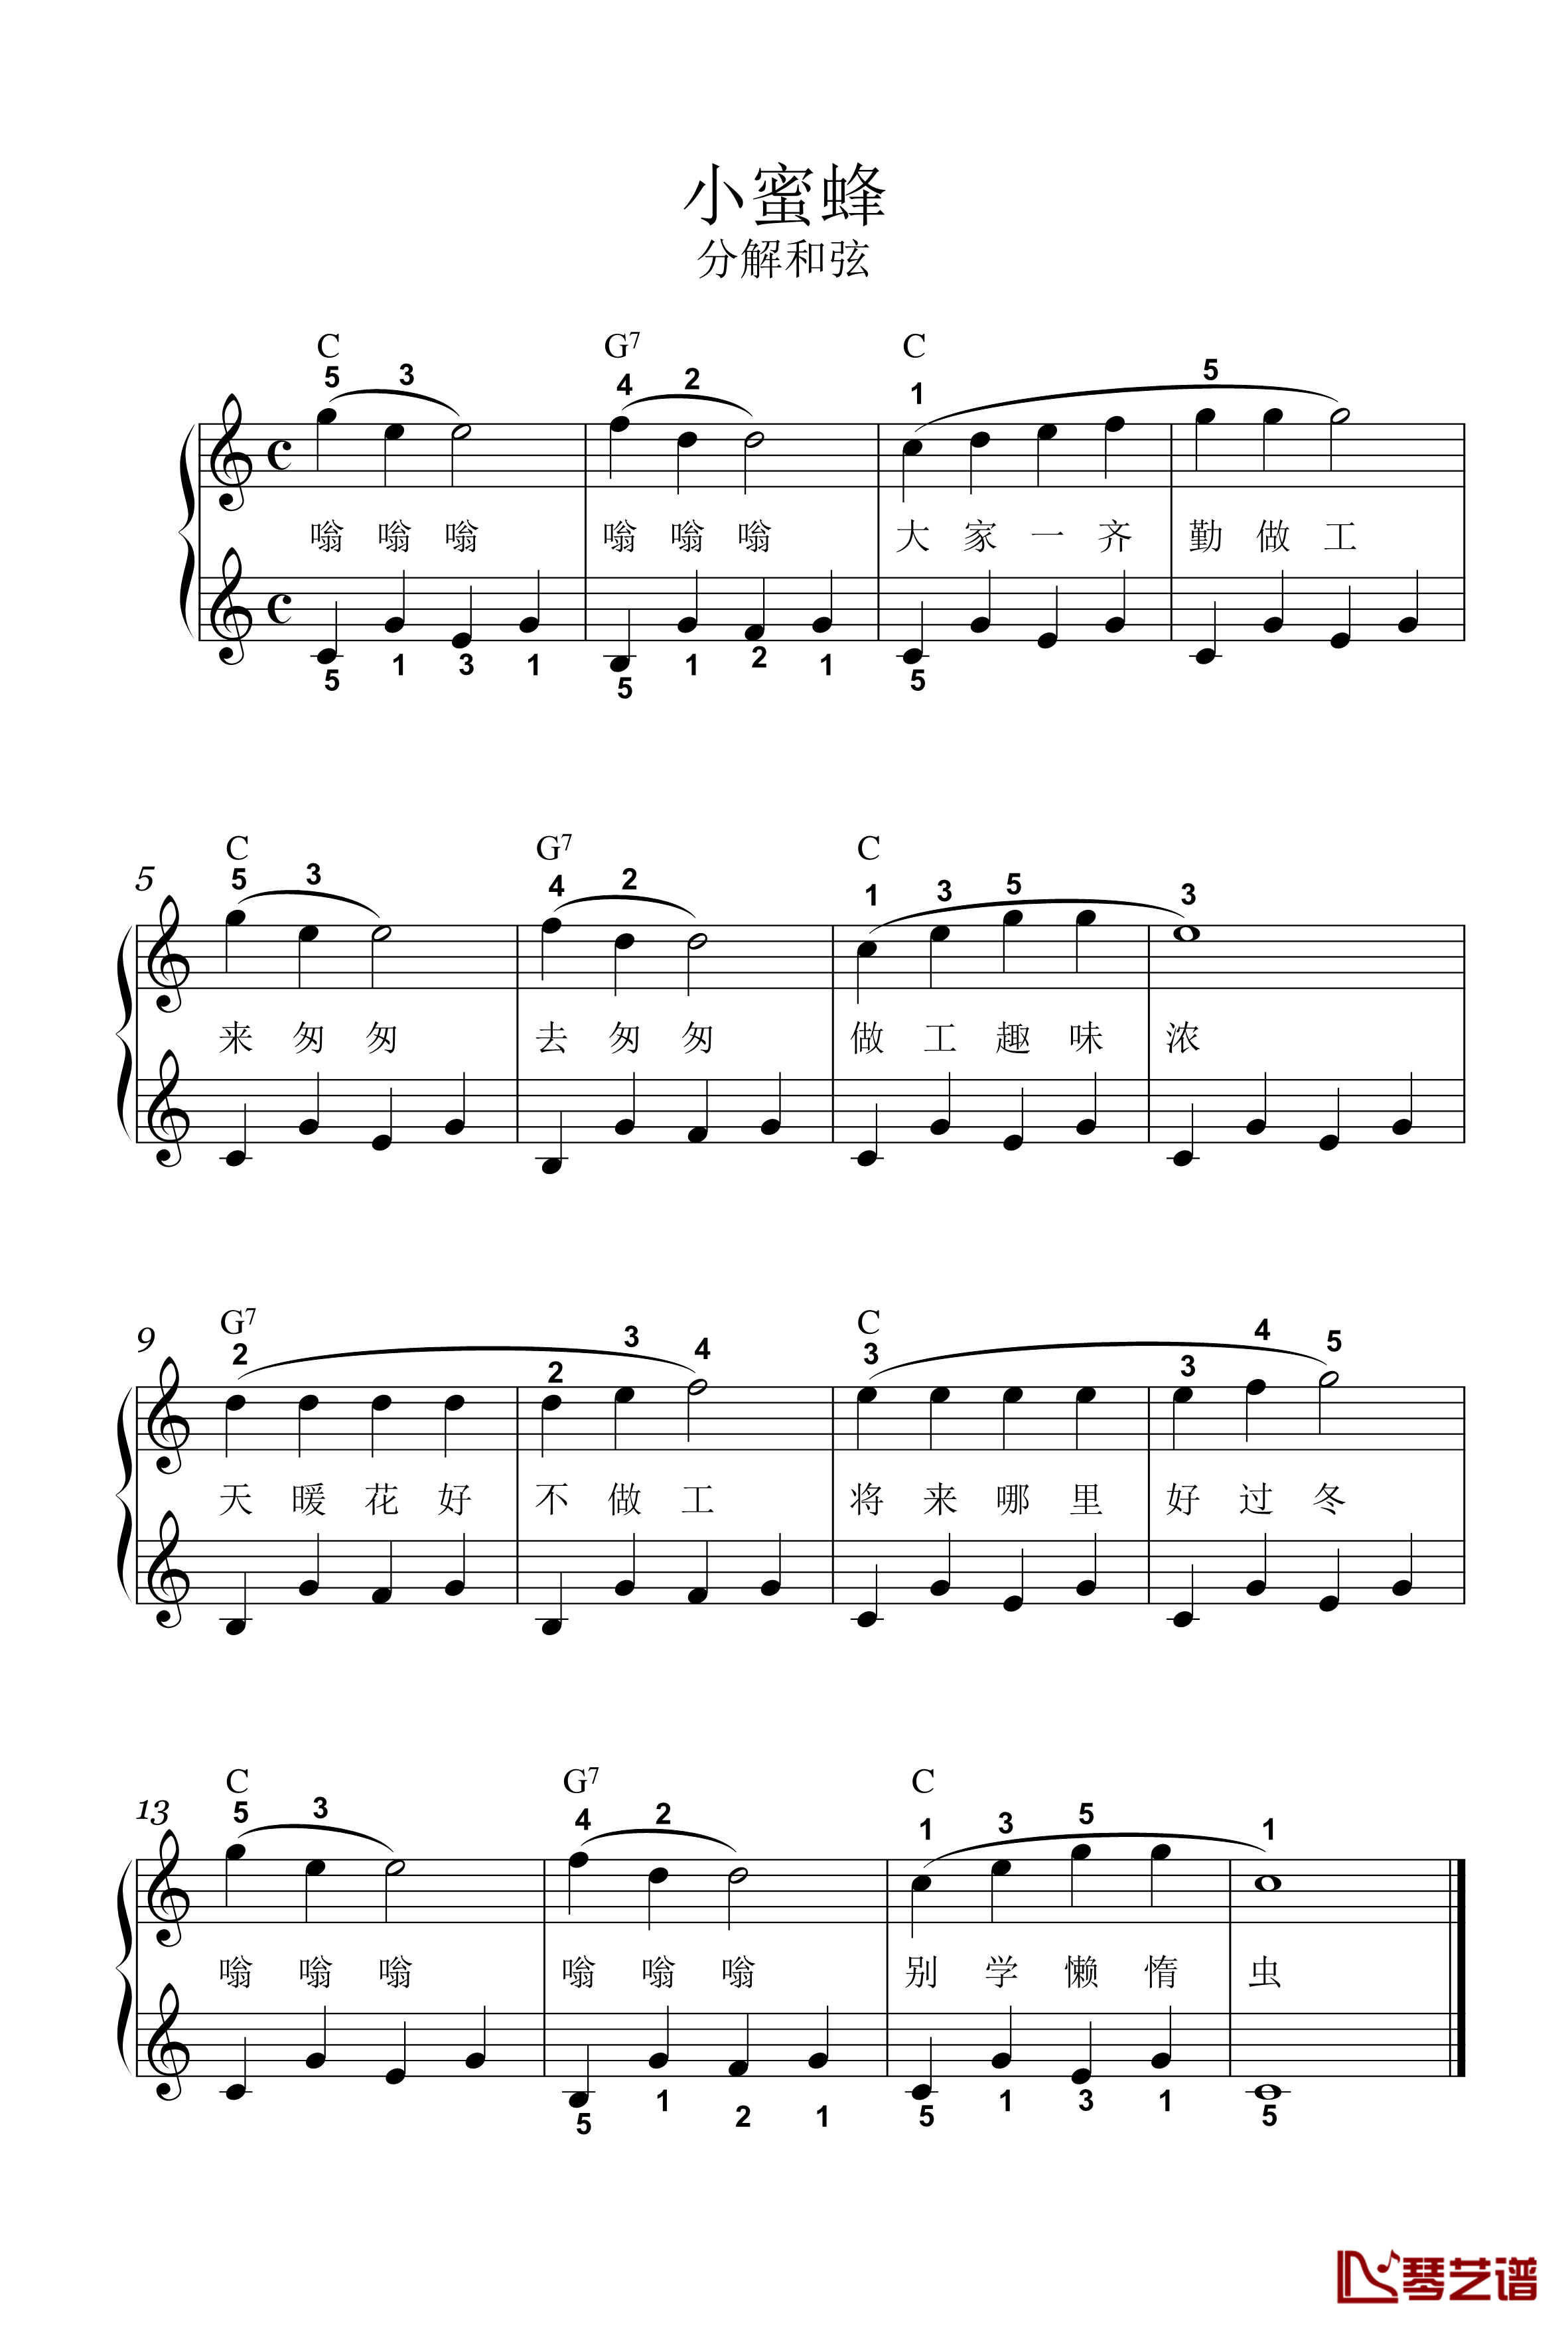 小蜜蜂钢琴谱-C-分解-儿童歌曲1